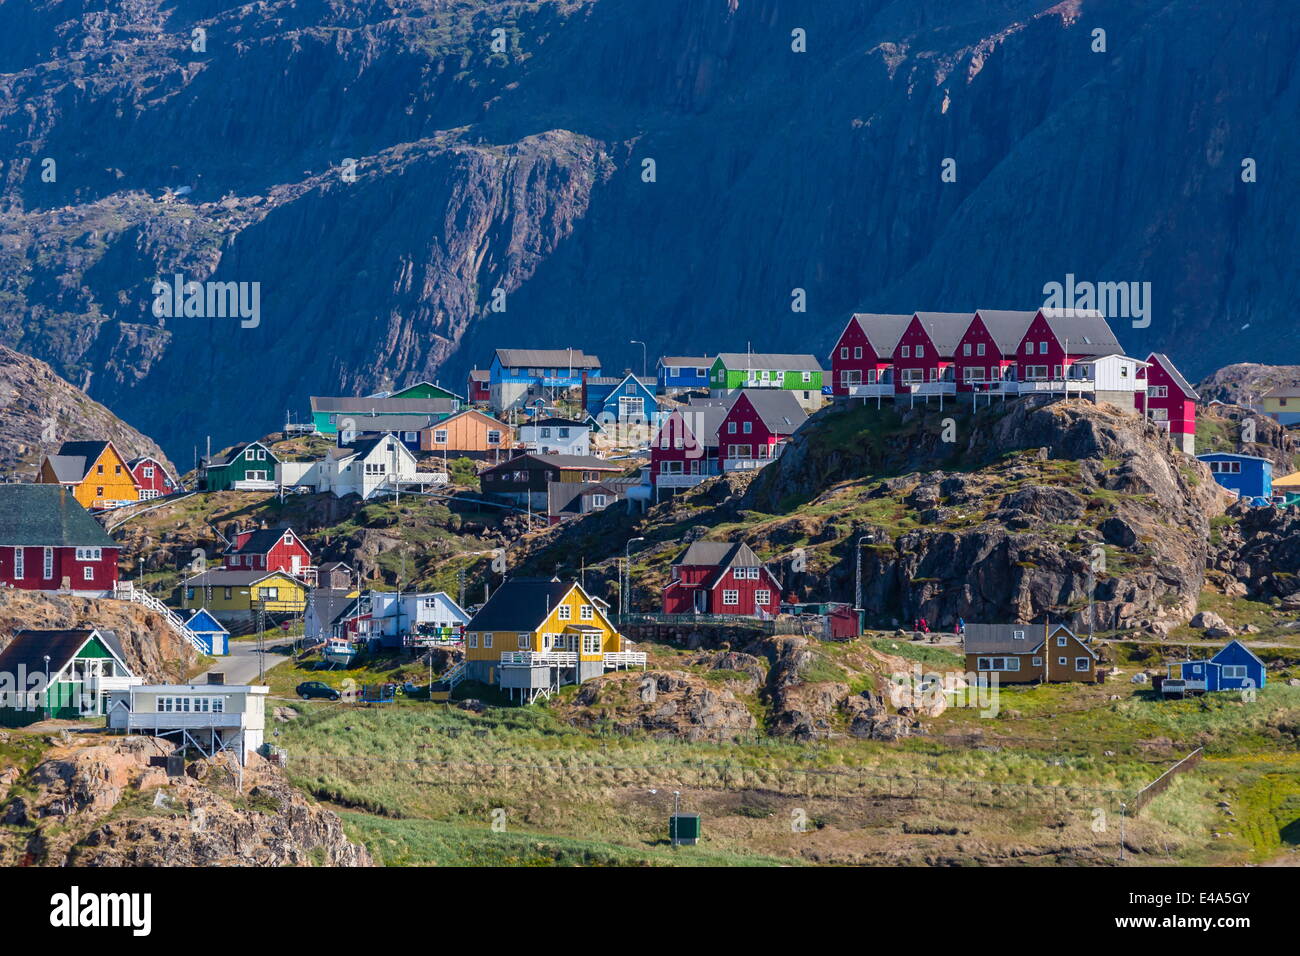 Vista de las casas de colores brillantes en Sisimiut, Groenlandia, las regiones polares Foto de stock